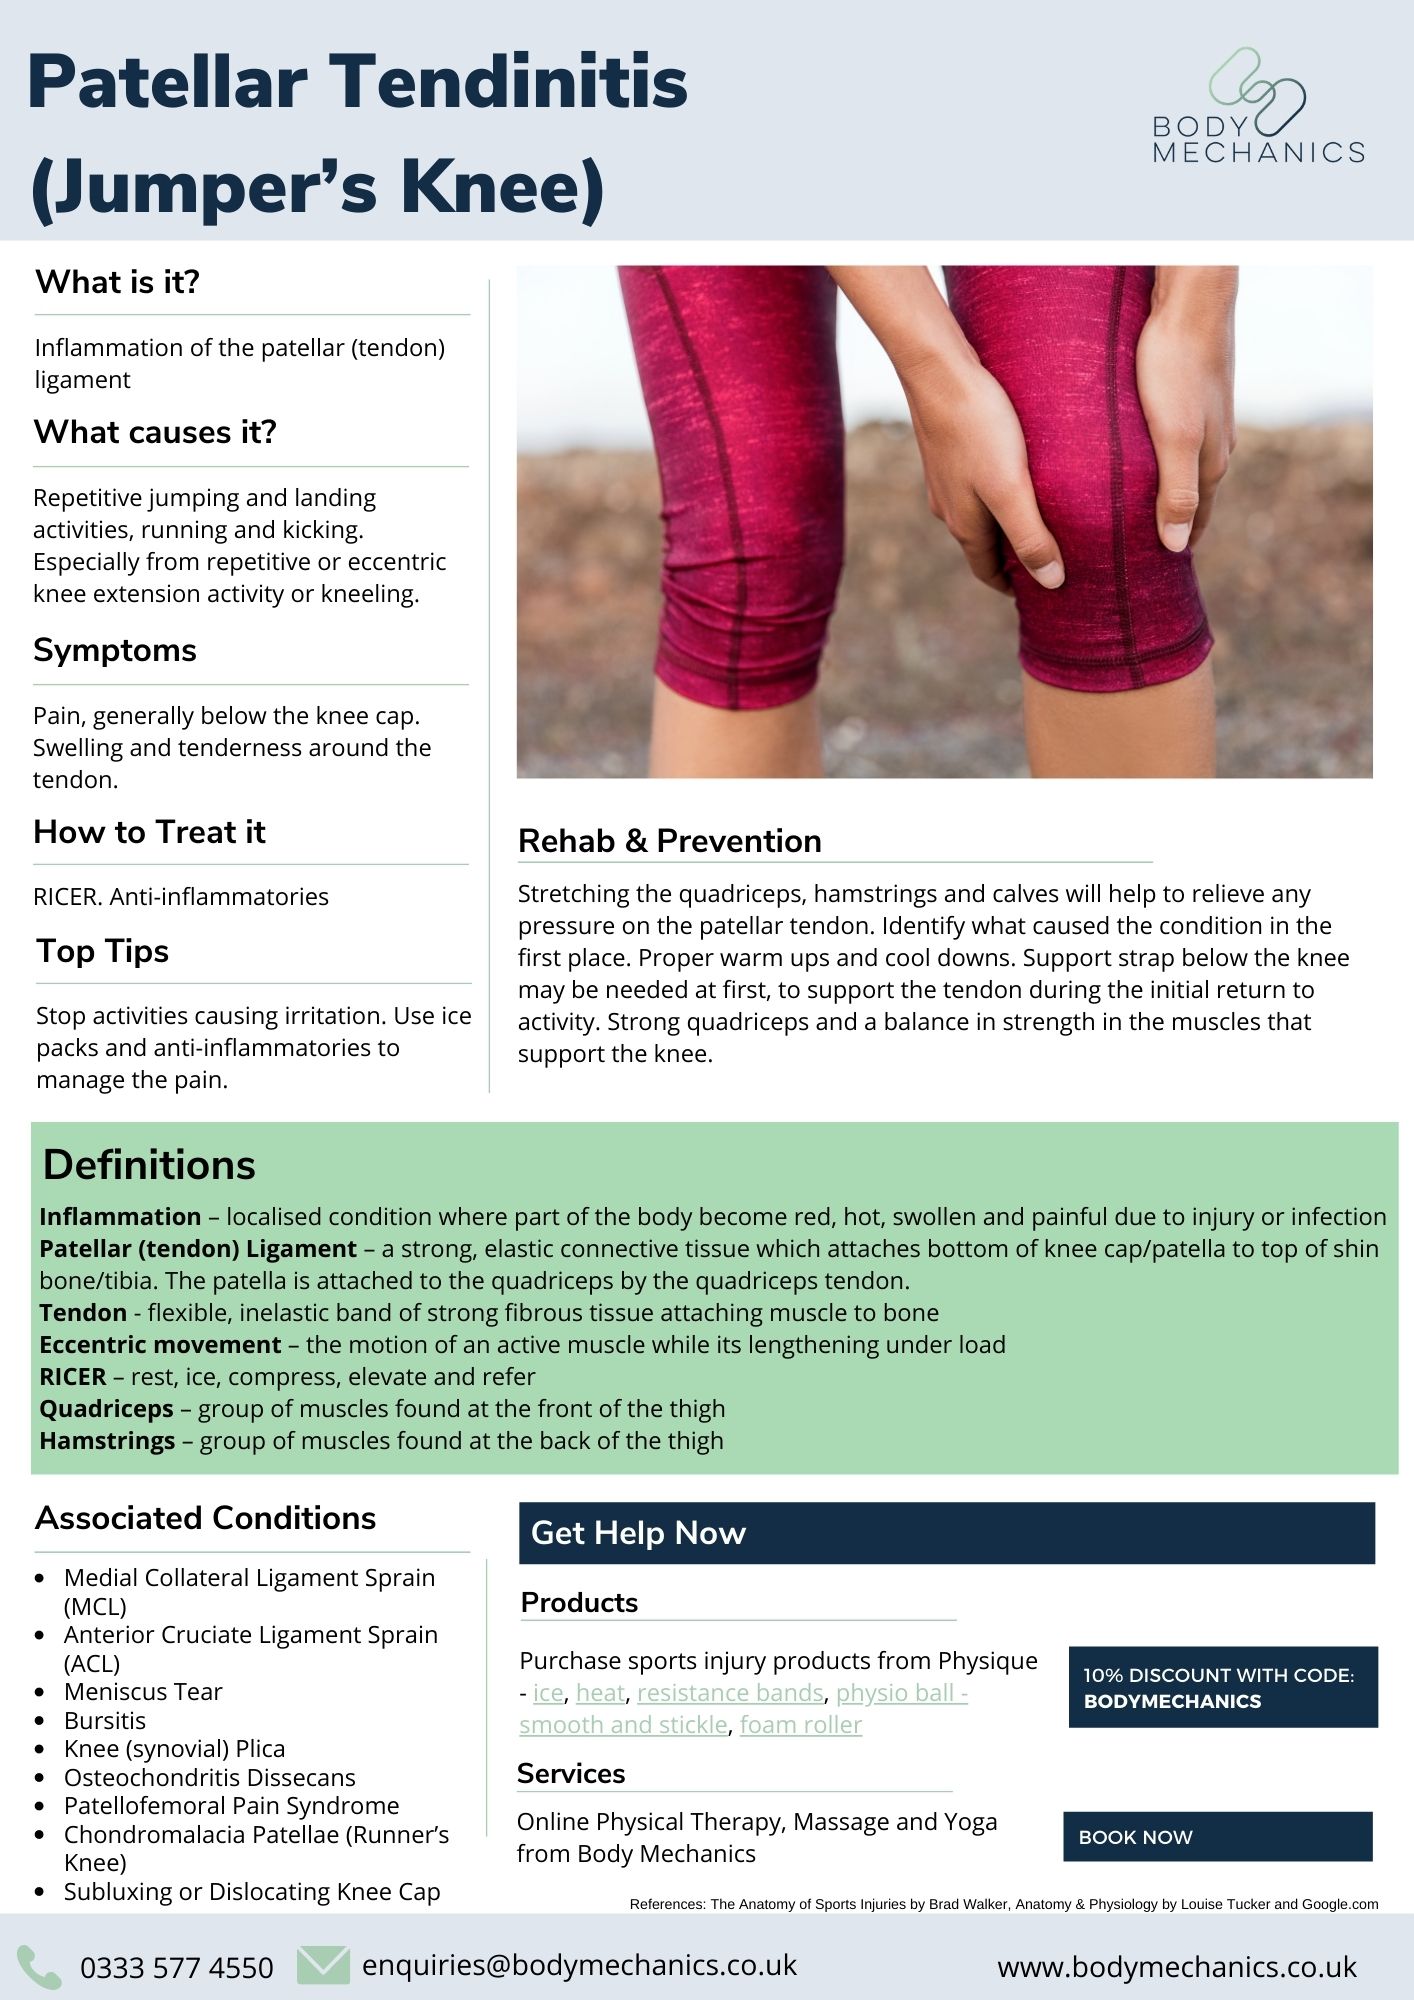 Patellar Tendinitis (Jumper’s Knee) Infosheet